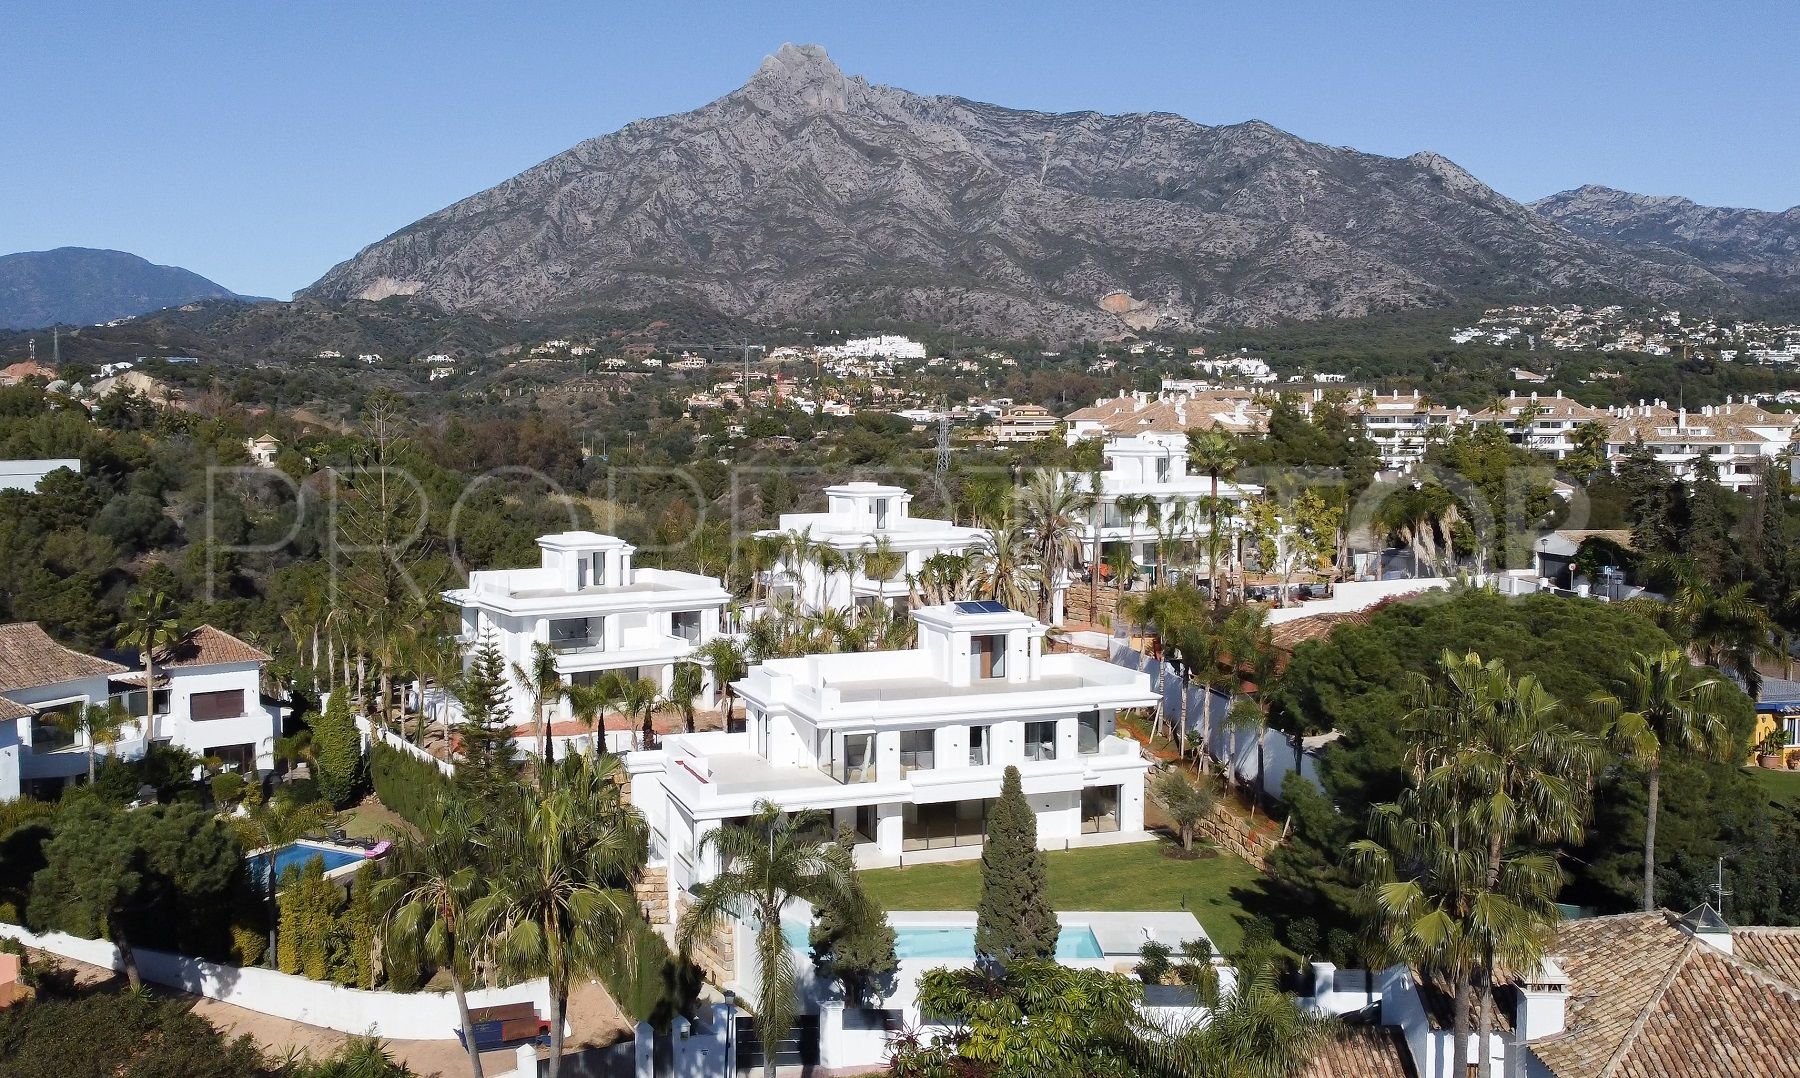 6 bedrooms Marbella Golden Mile villa for sale